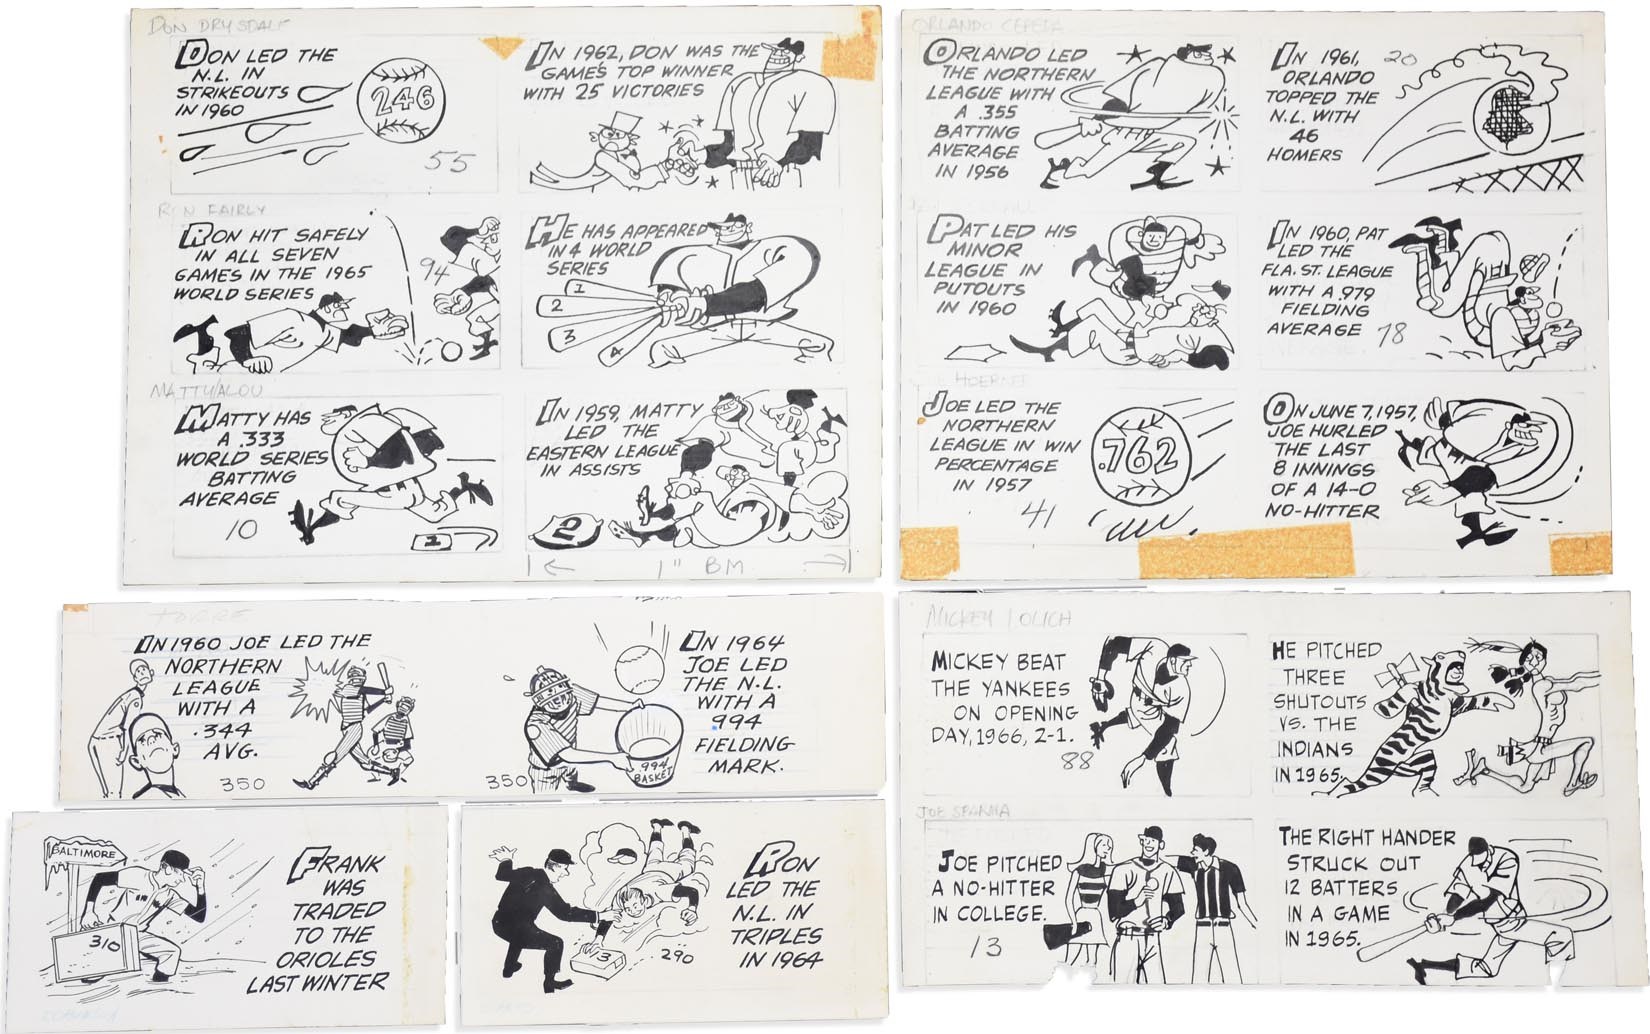 Baseball and Trading Cards - 1950s-60s Topps Baseball Card Backs Original Artwork from 1989 Topps Auction (83)